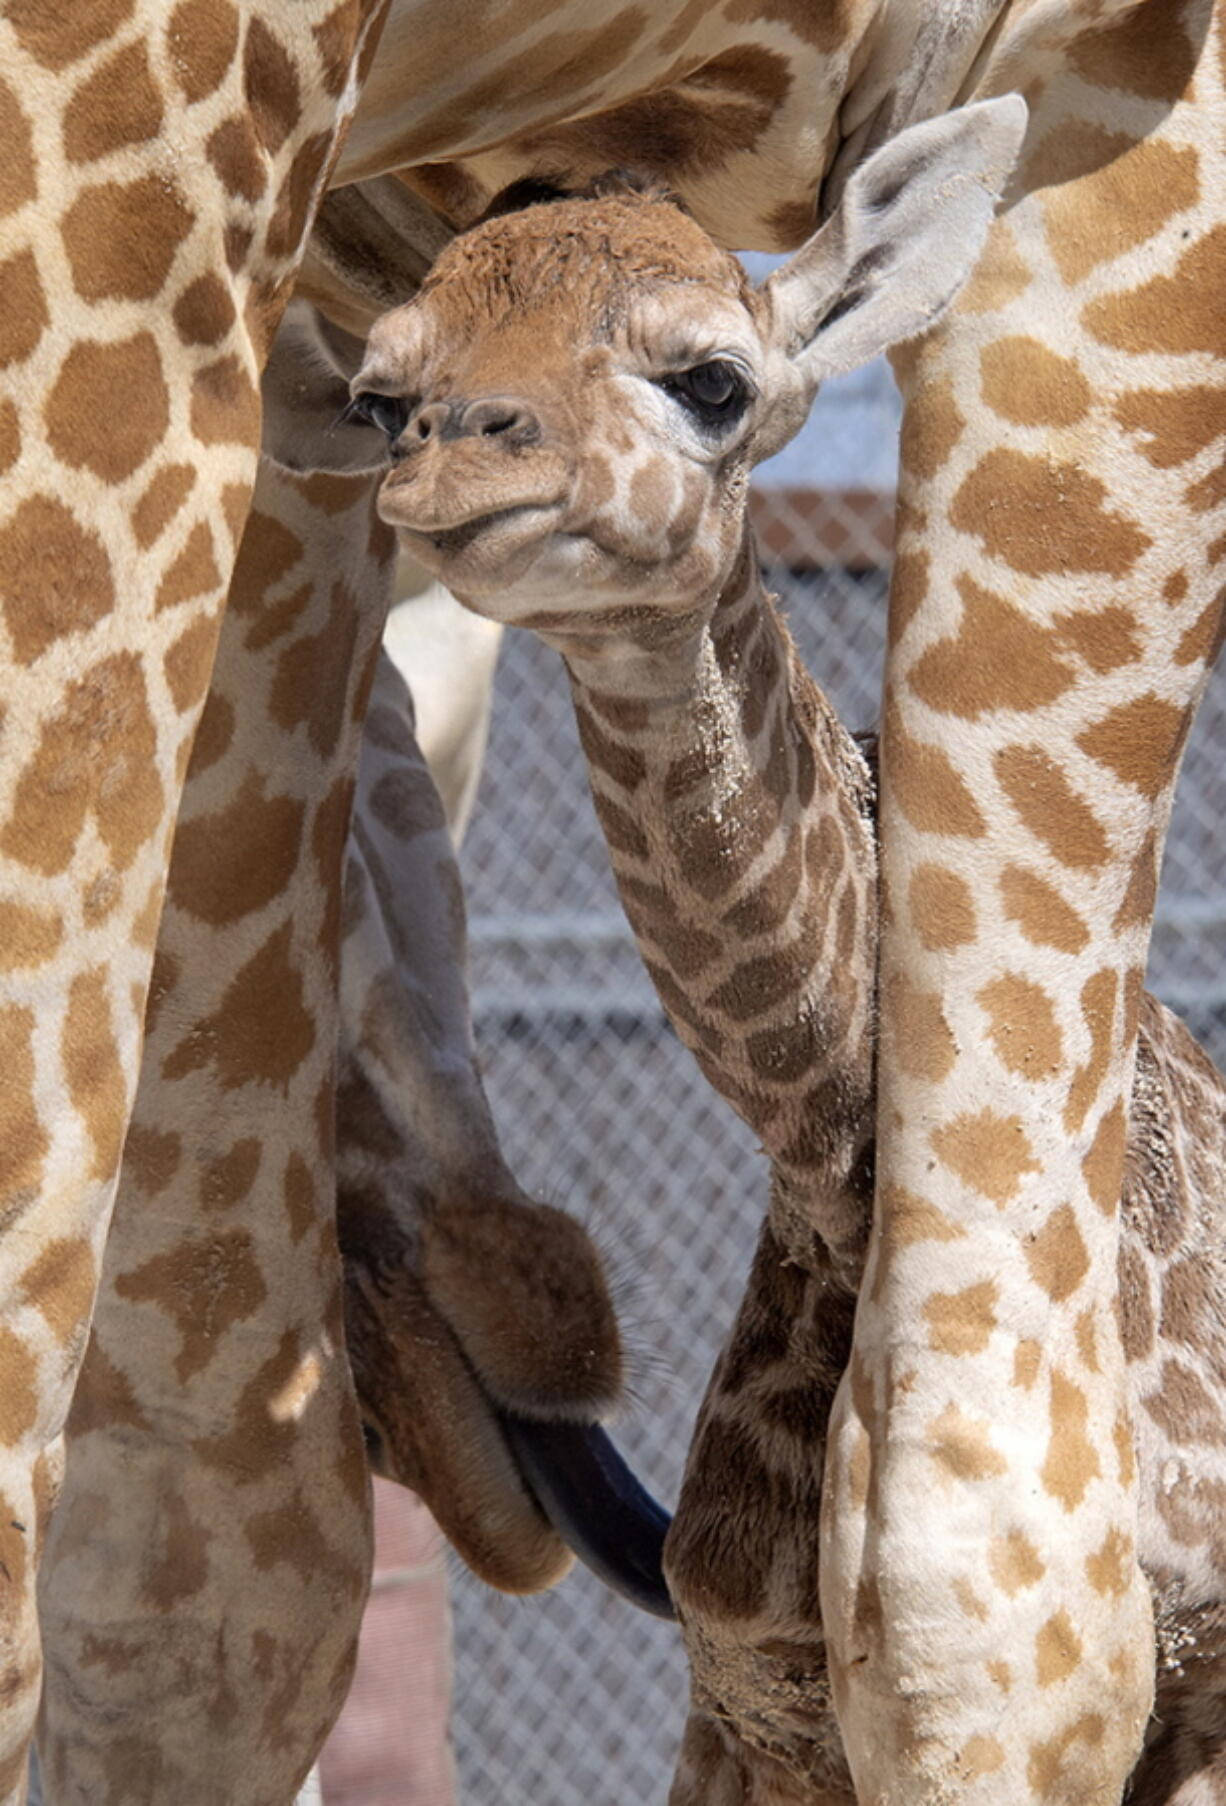 Baby Giraffe Hiding Under Belly